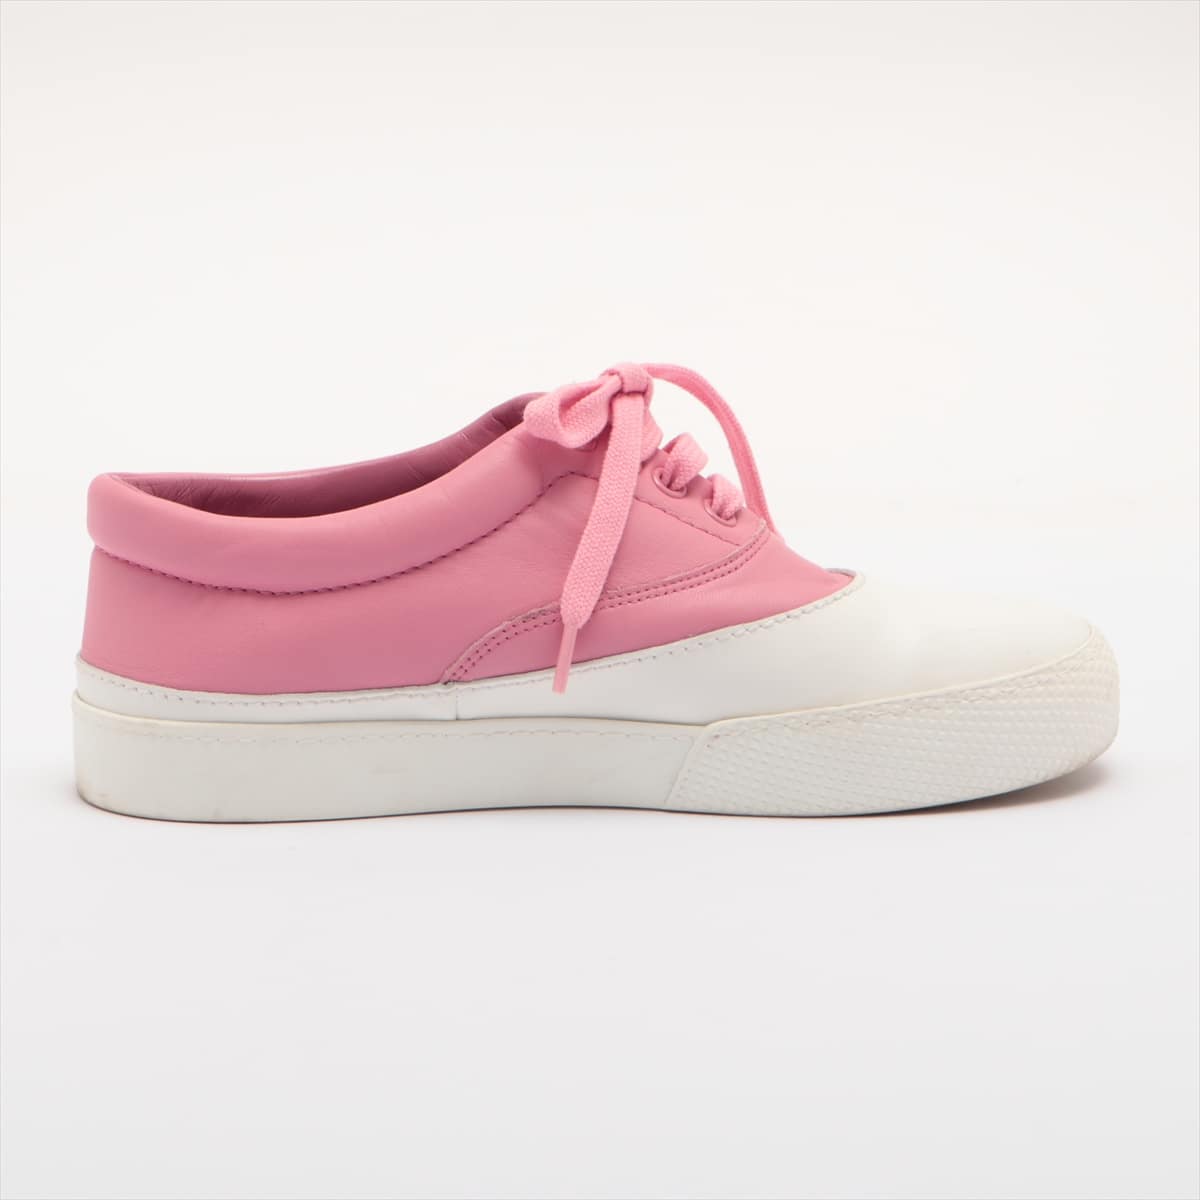 Miu Miu Leather Sneakers 35 Ladies' Pink